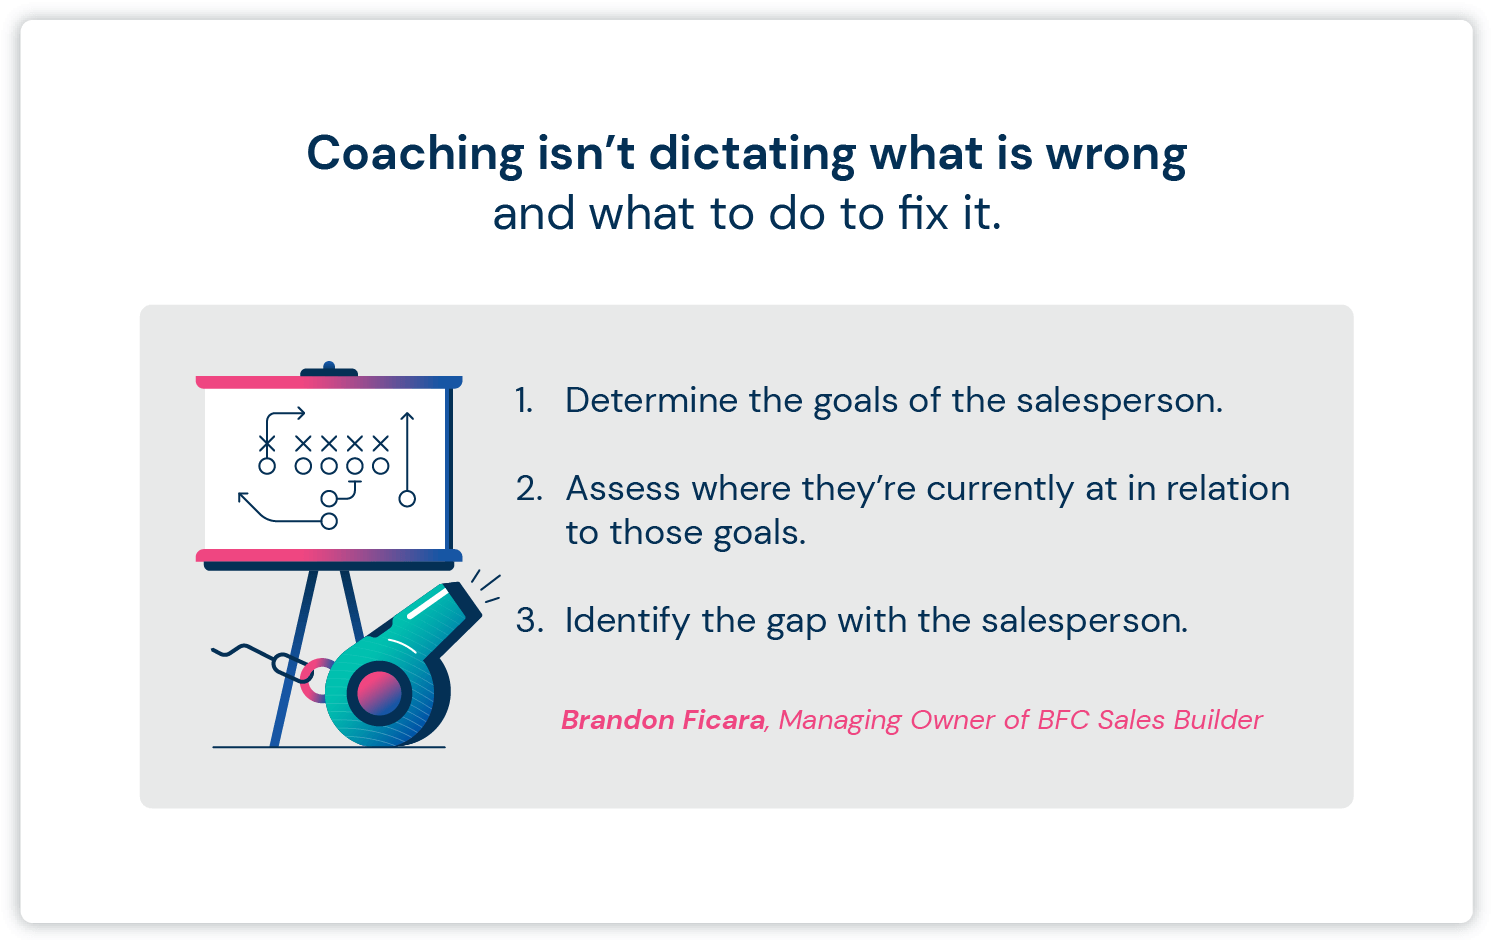 Une image d'un manuel de sport à côté d'un texte sur la façon dont le coaching de vente ne consiste pas seulement à dicter ce qui ne va pas.